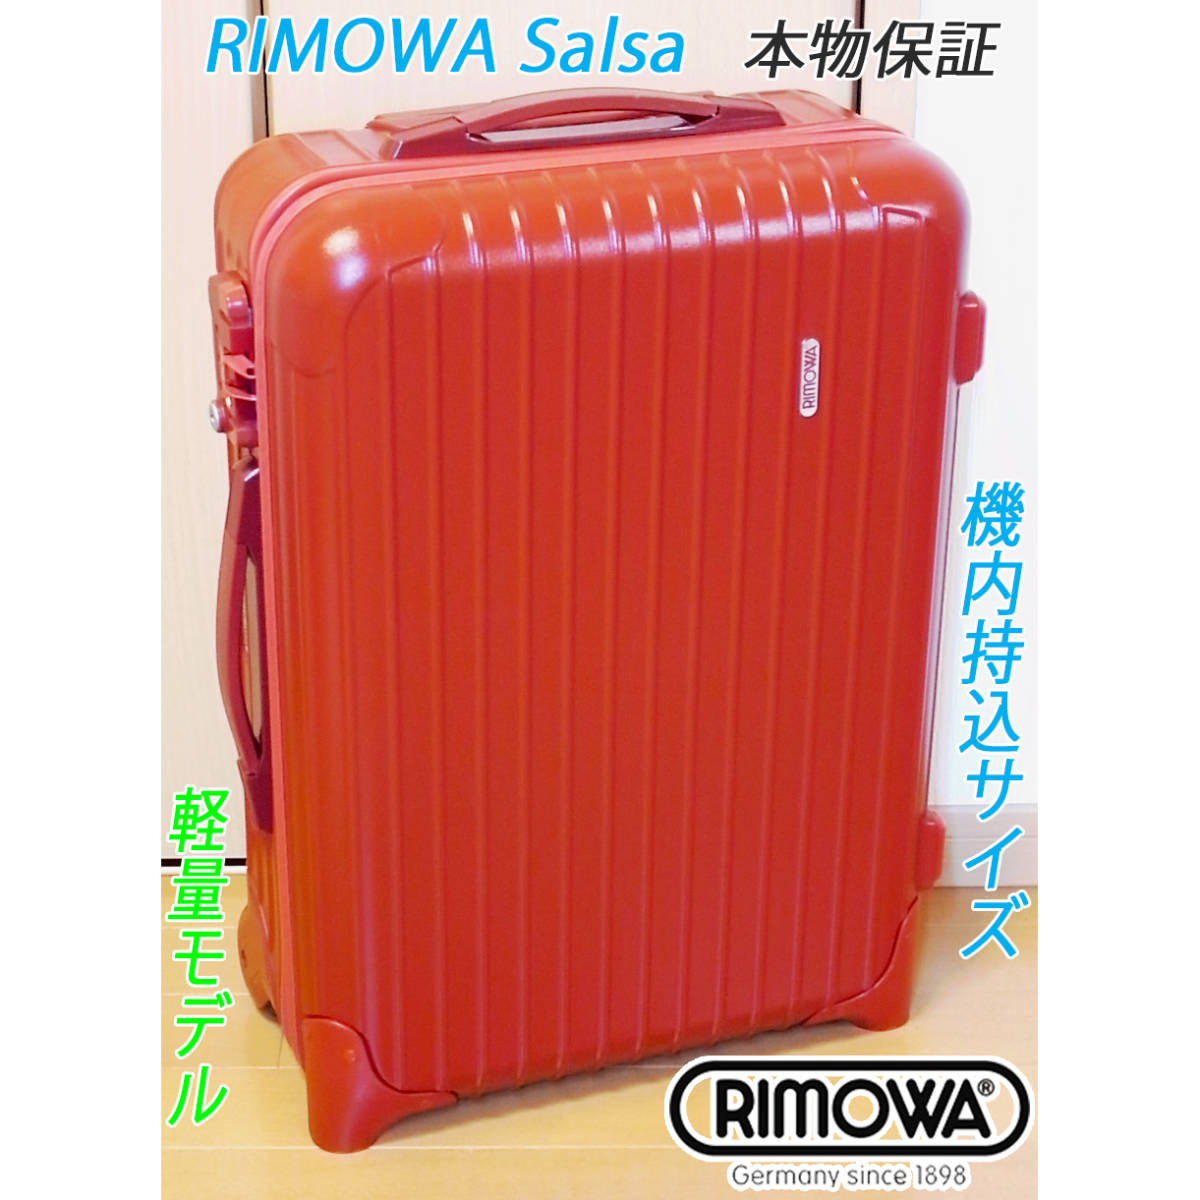 ◇本物! RIMOWA Salsa/リモワ サルサ 35L【機内持込可】超軽量 レッド